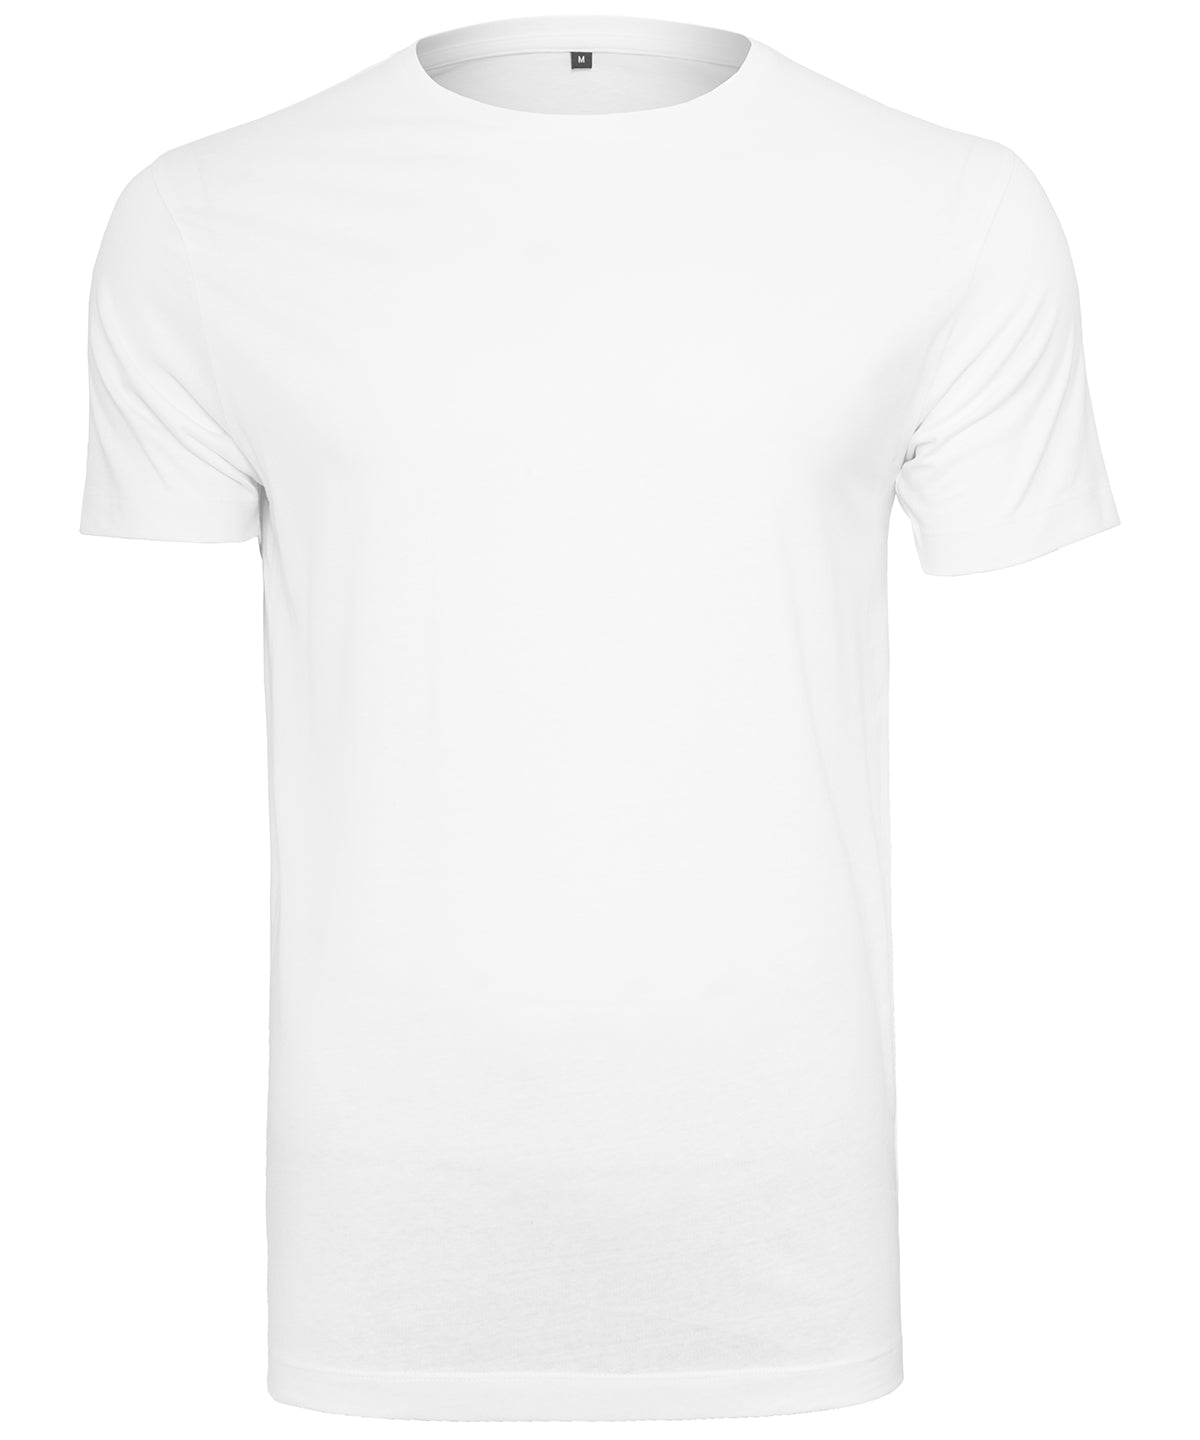 Stuttermabolir - Light T-shirt Round-neck